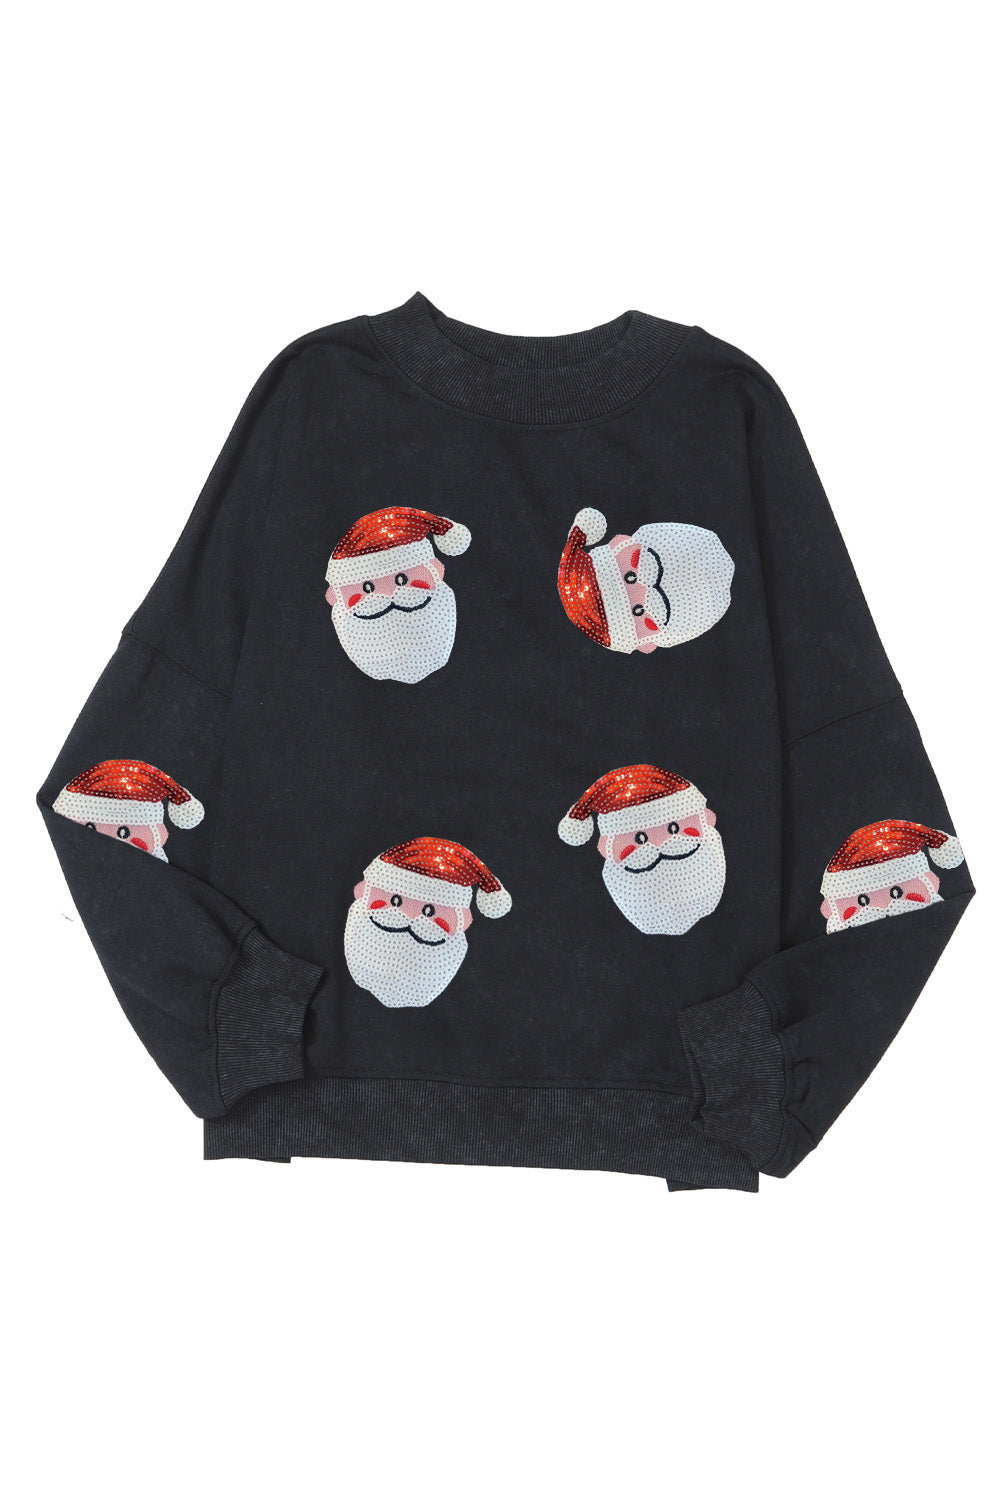 Black Sequined Santa Claus Christmas Fashion Sweatshirt